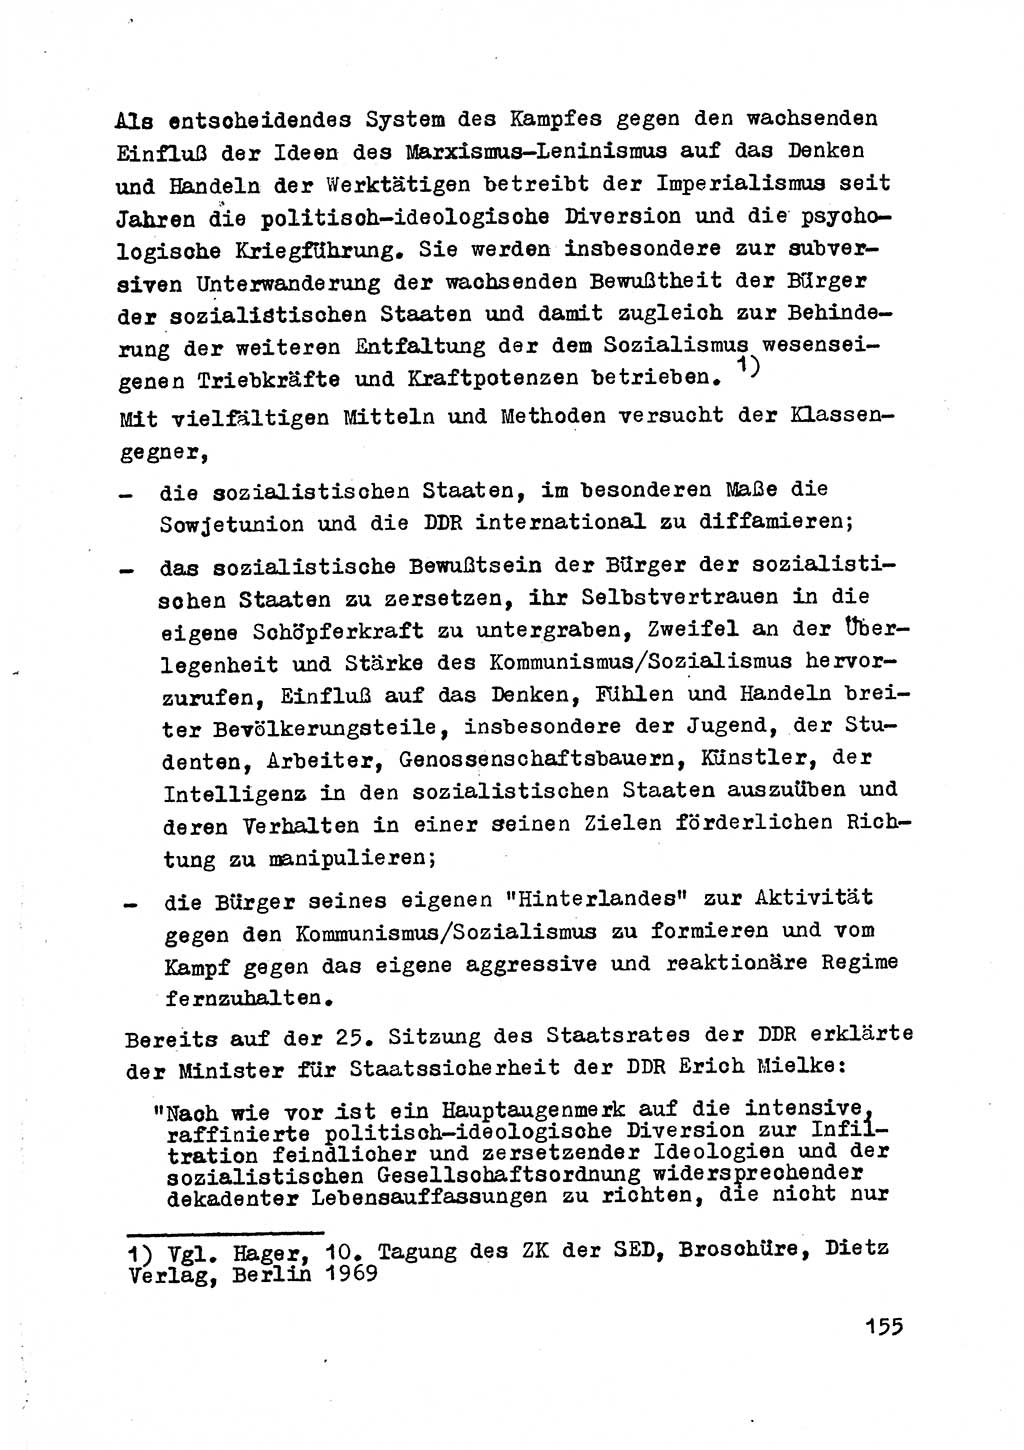 Strafrecht der DDR (Deutsche Demokratische Republik), Besonderer Teil, Lehrmaterial, Heft 2 1969, Seite 155 (Strafr. DDR BT Lehrmat. H. 2 1969, S. 155)